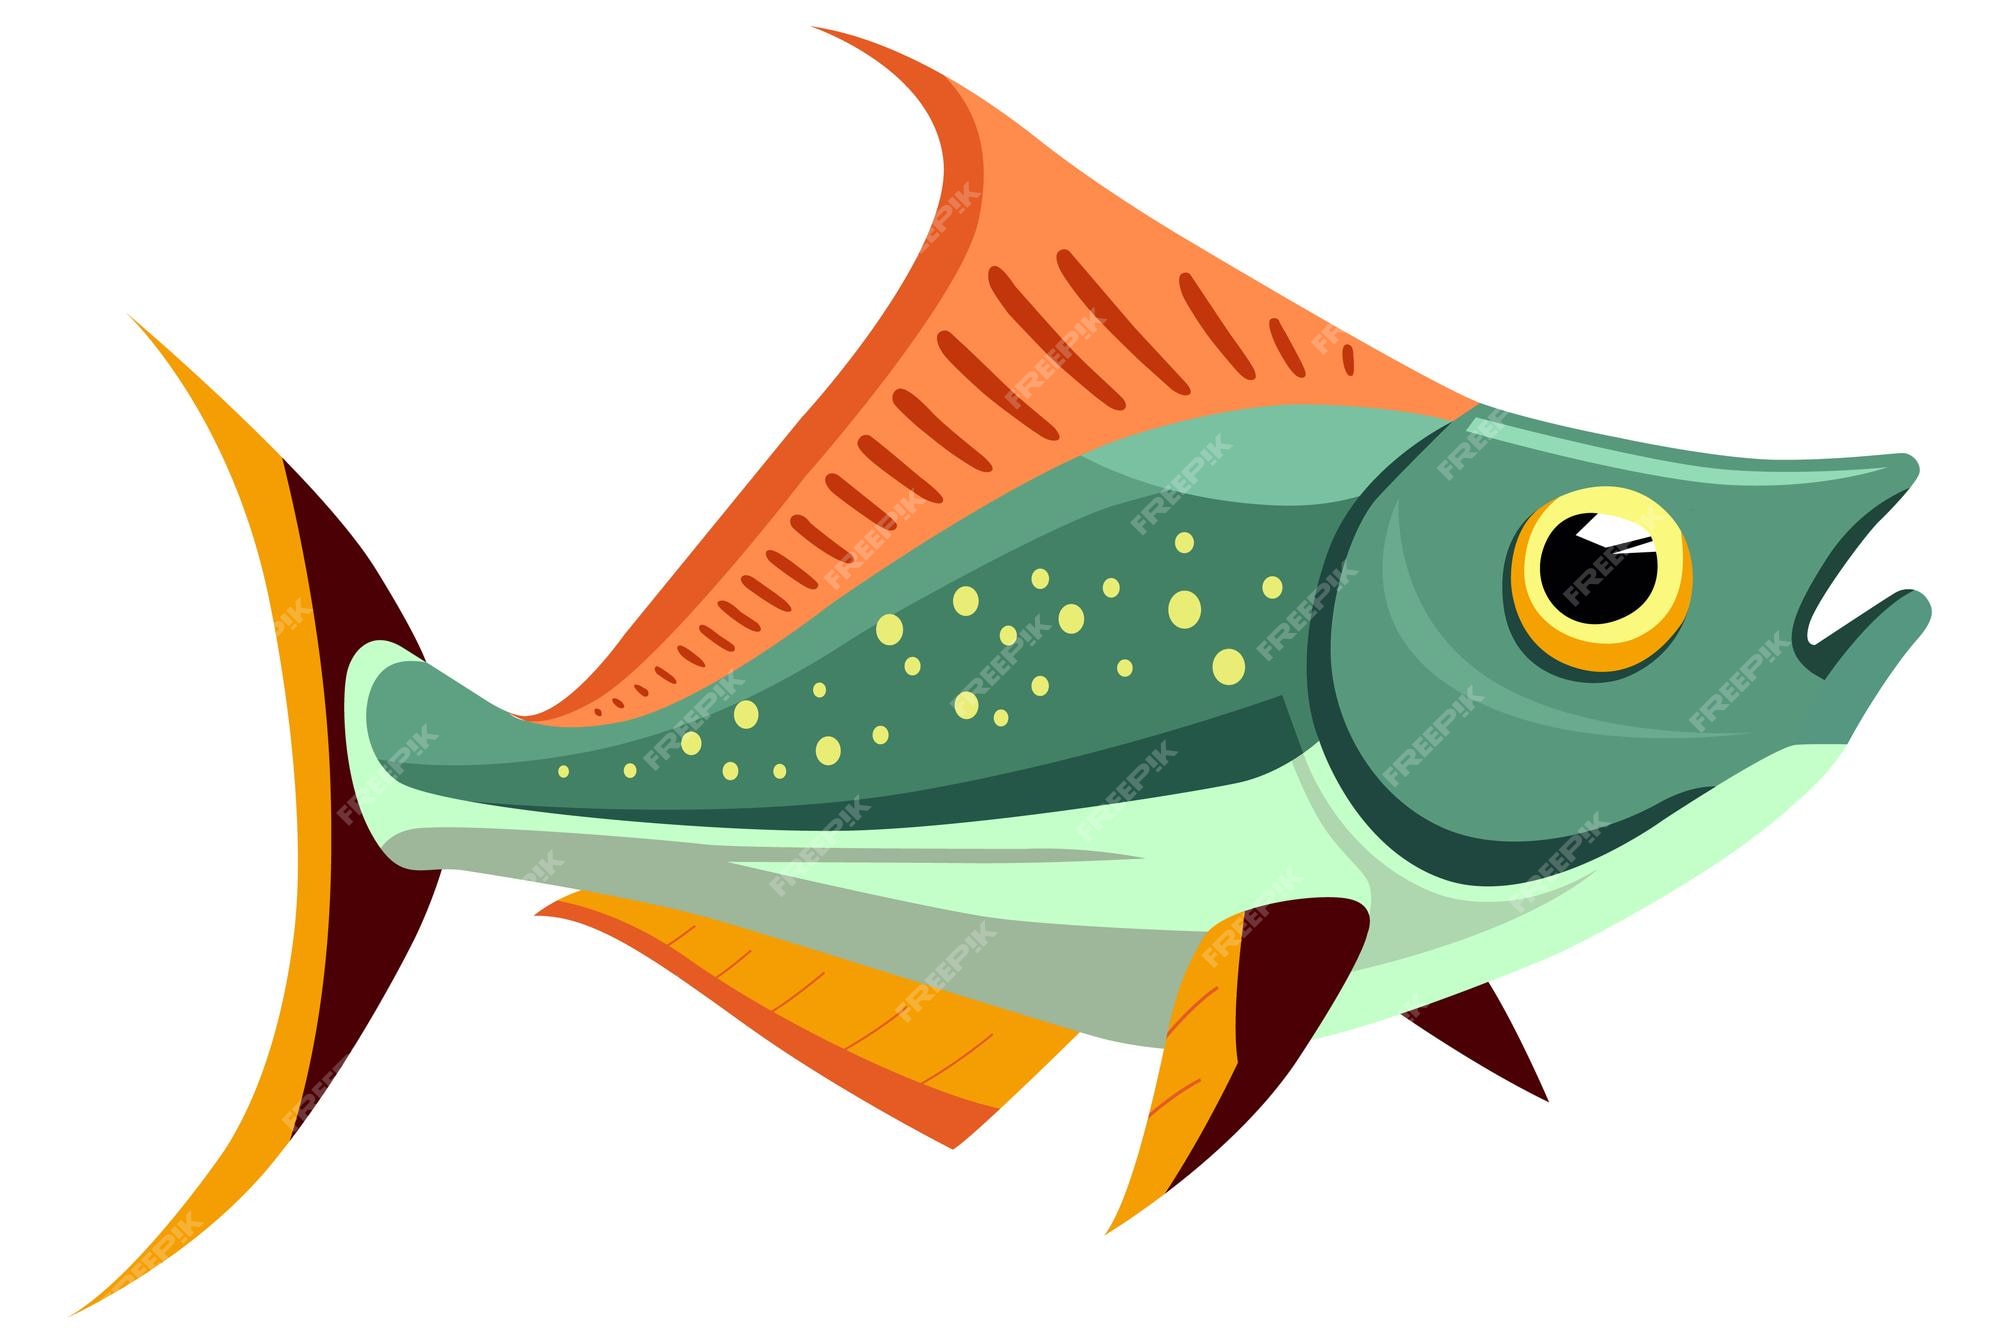 Fishing Clip Art Images - Free Download on Freepik